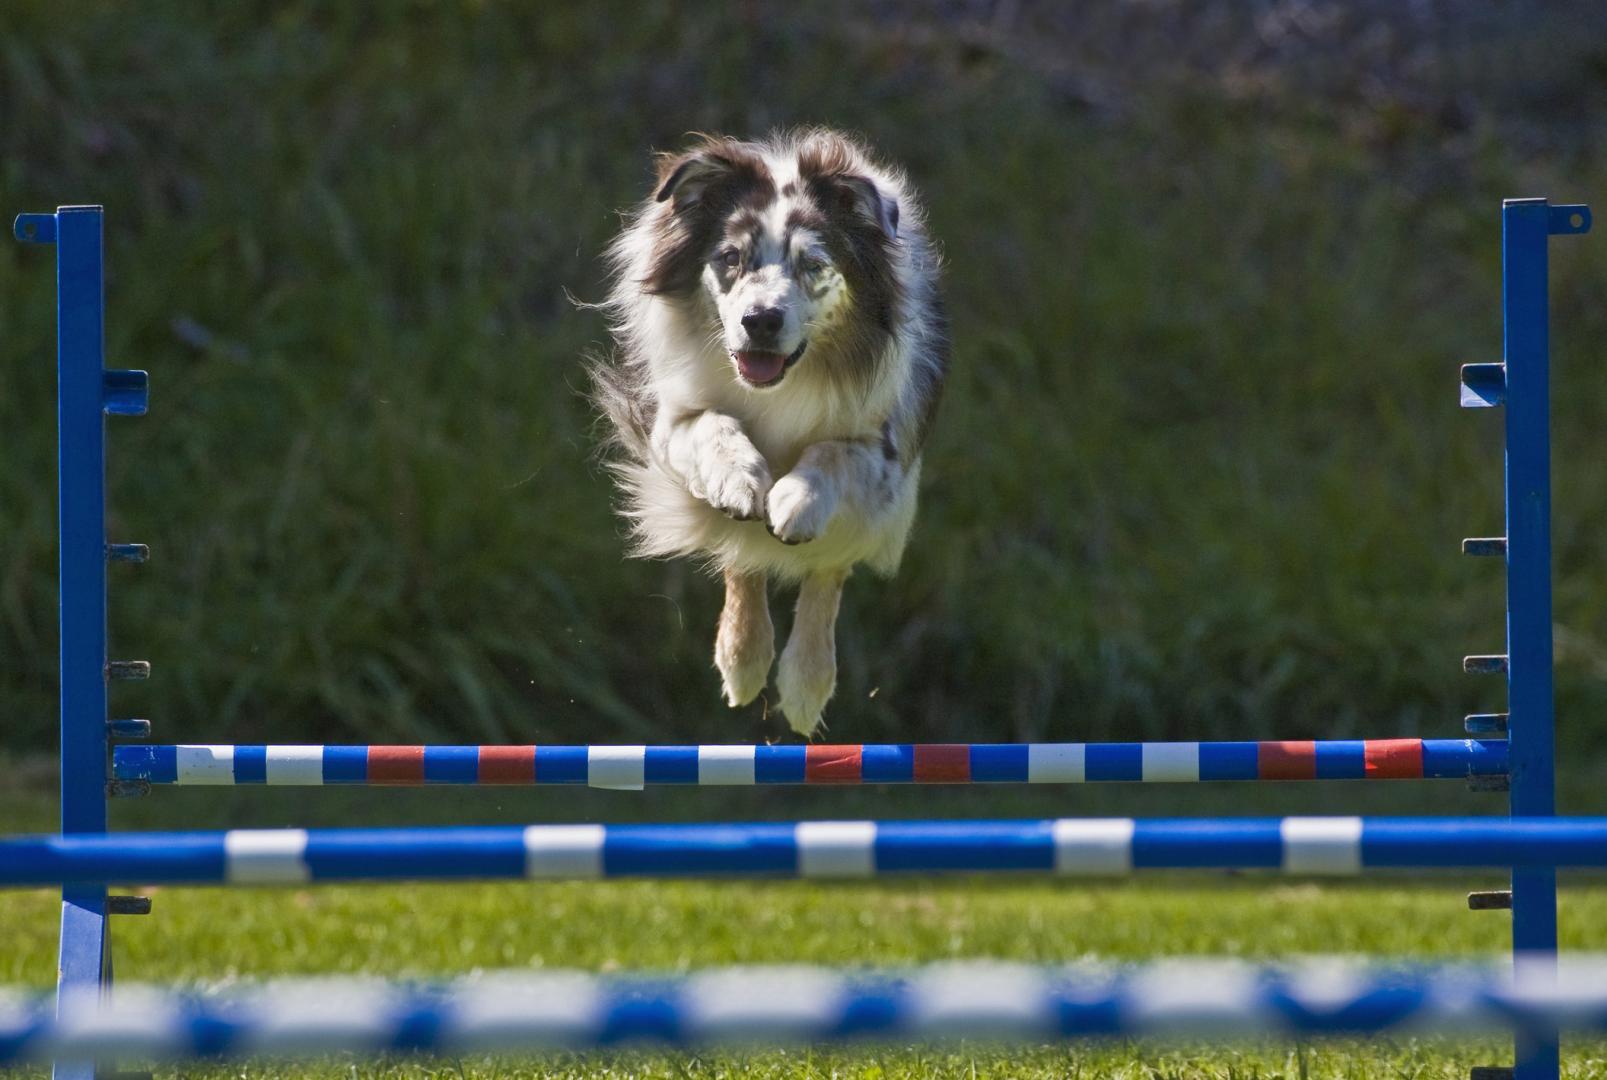  Mozogjunk a kutyánkkal: az agility